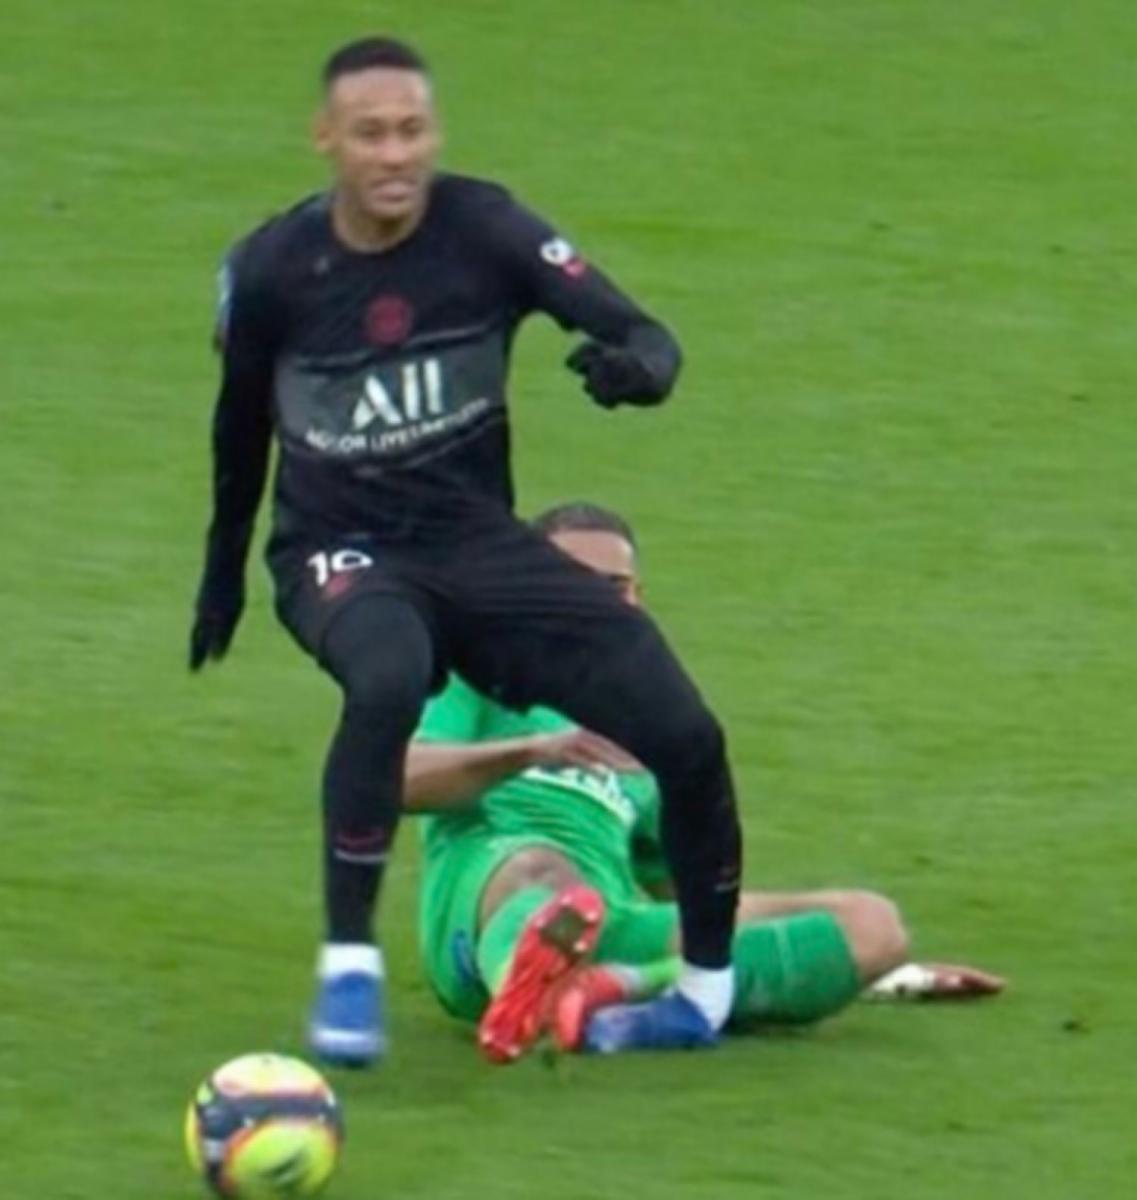 ¡QUÉ DOLOR! Neymar tuvo que dejar la cancha después de esta falta que le dobló el tobillo izquierdo.